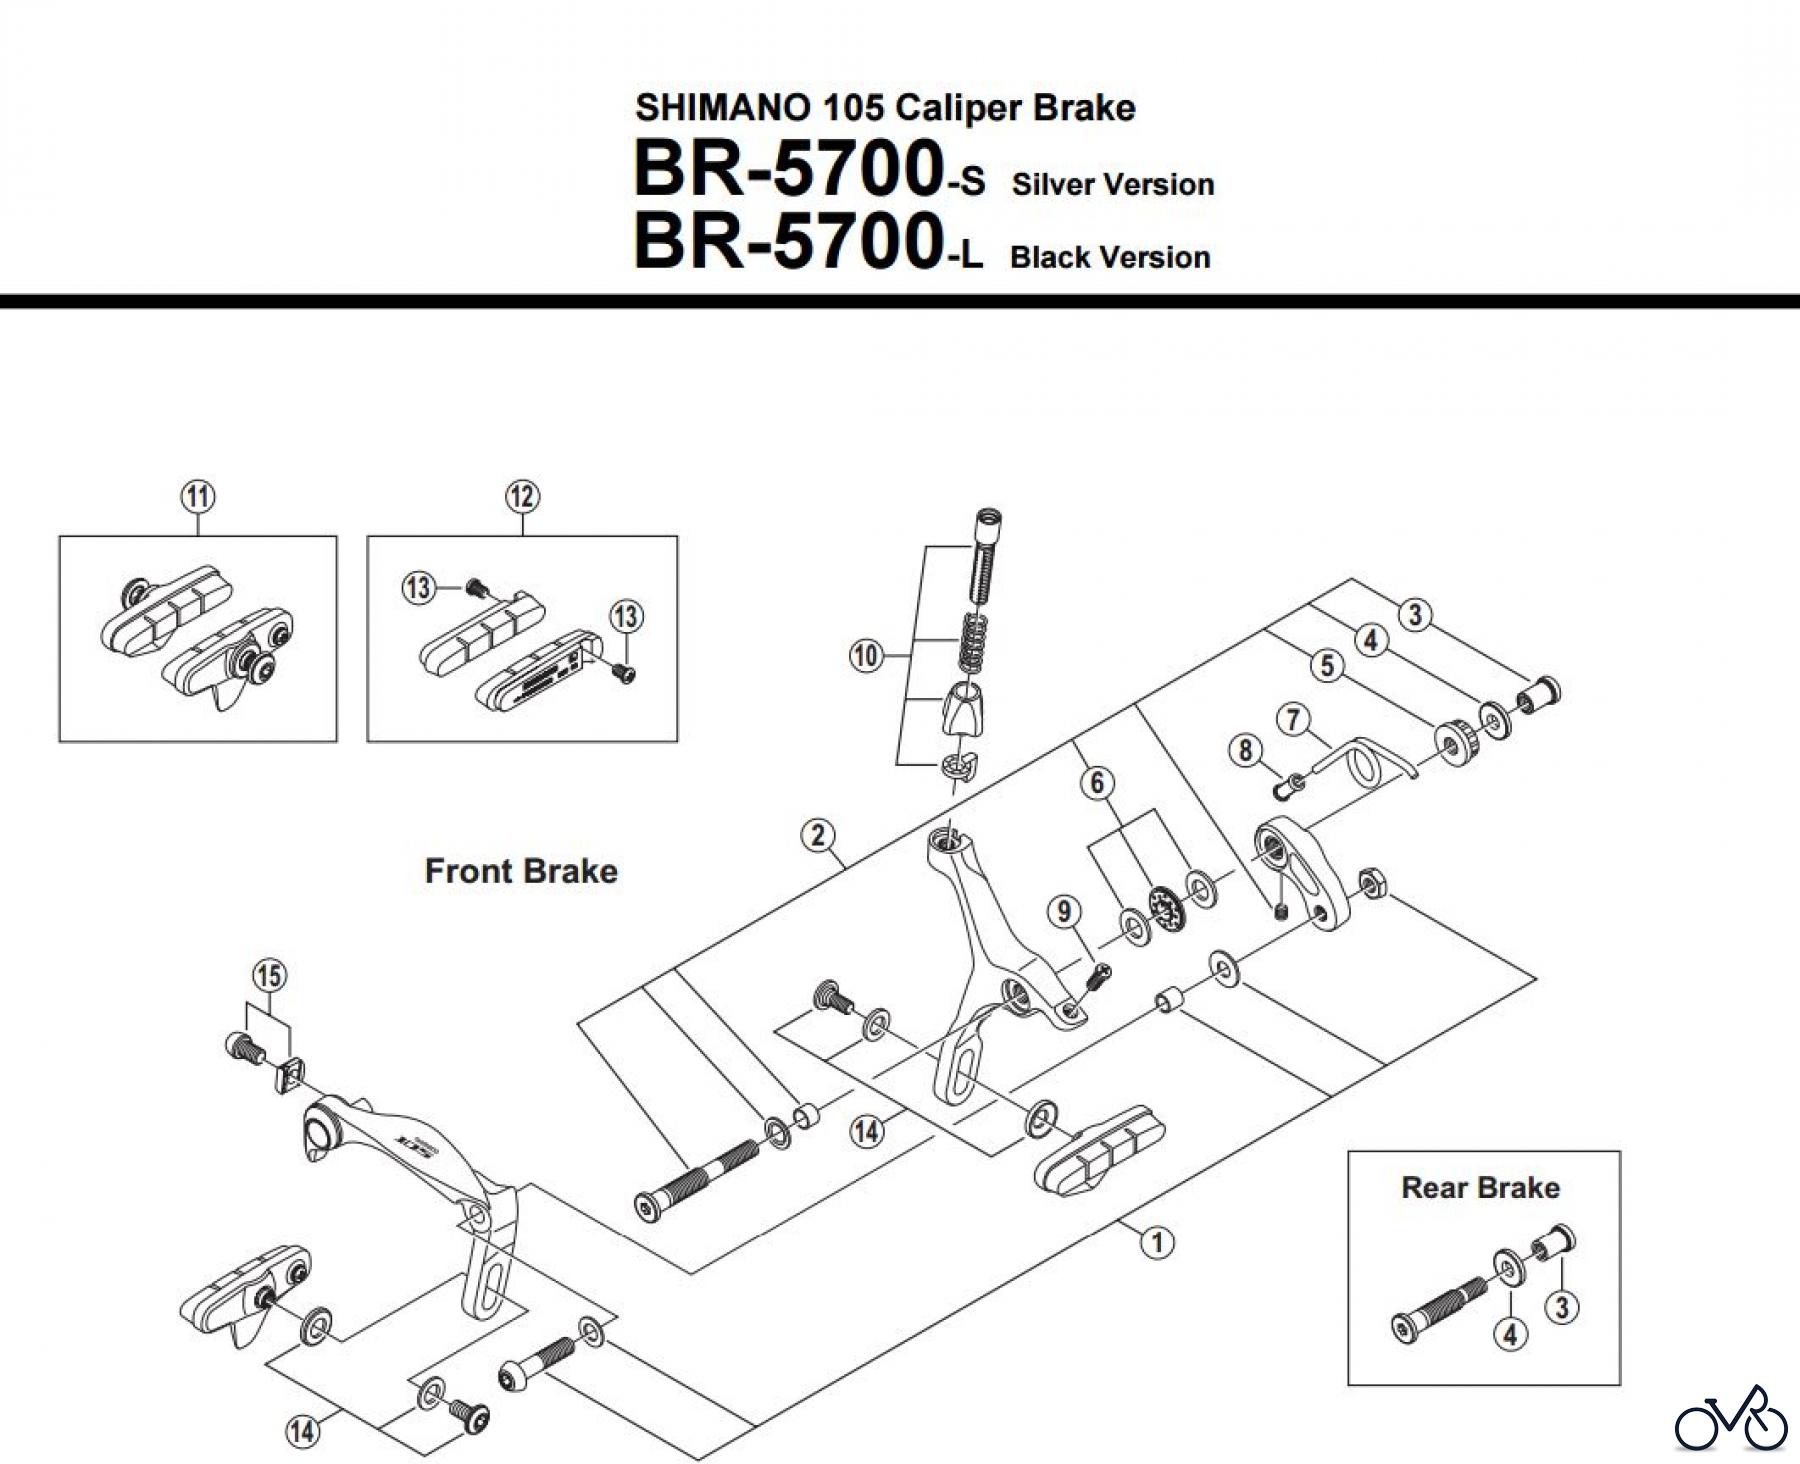  Shimano BR Brake - Bremse BR-5700 -3015 SHIMANO 105 Caliper Brake